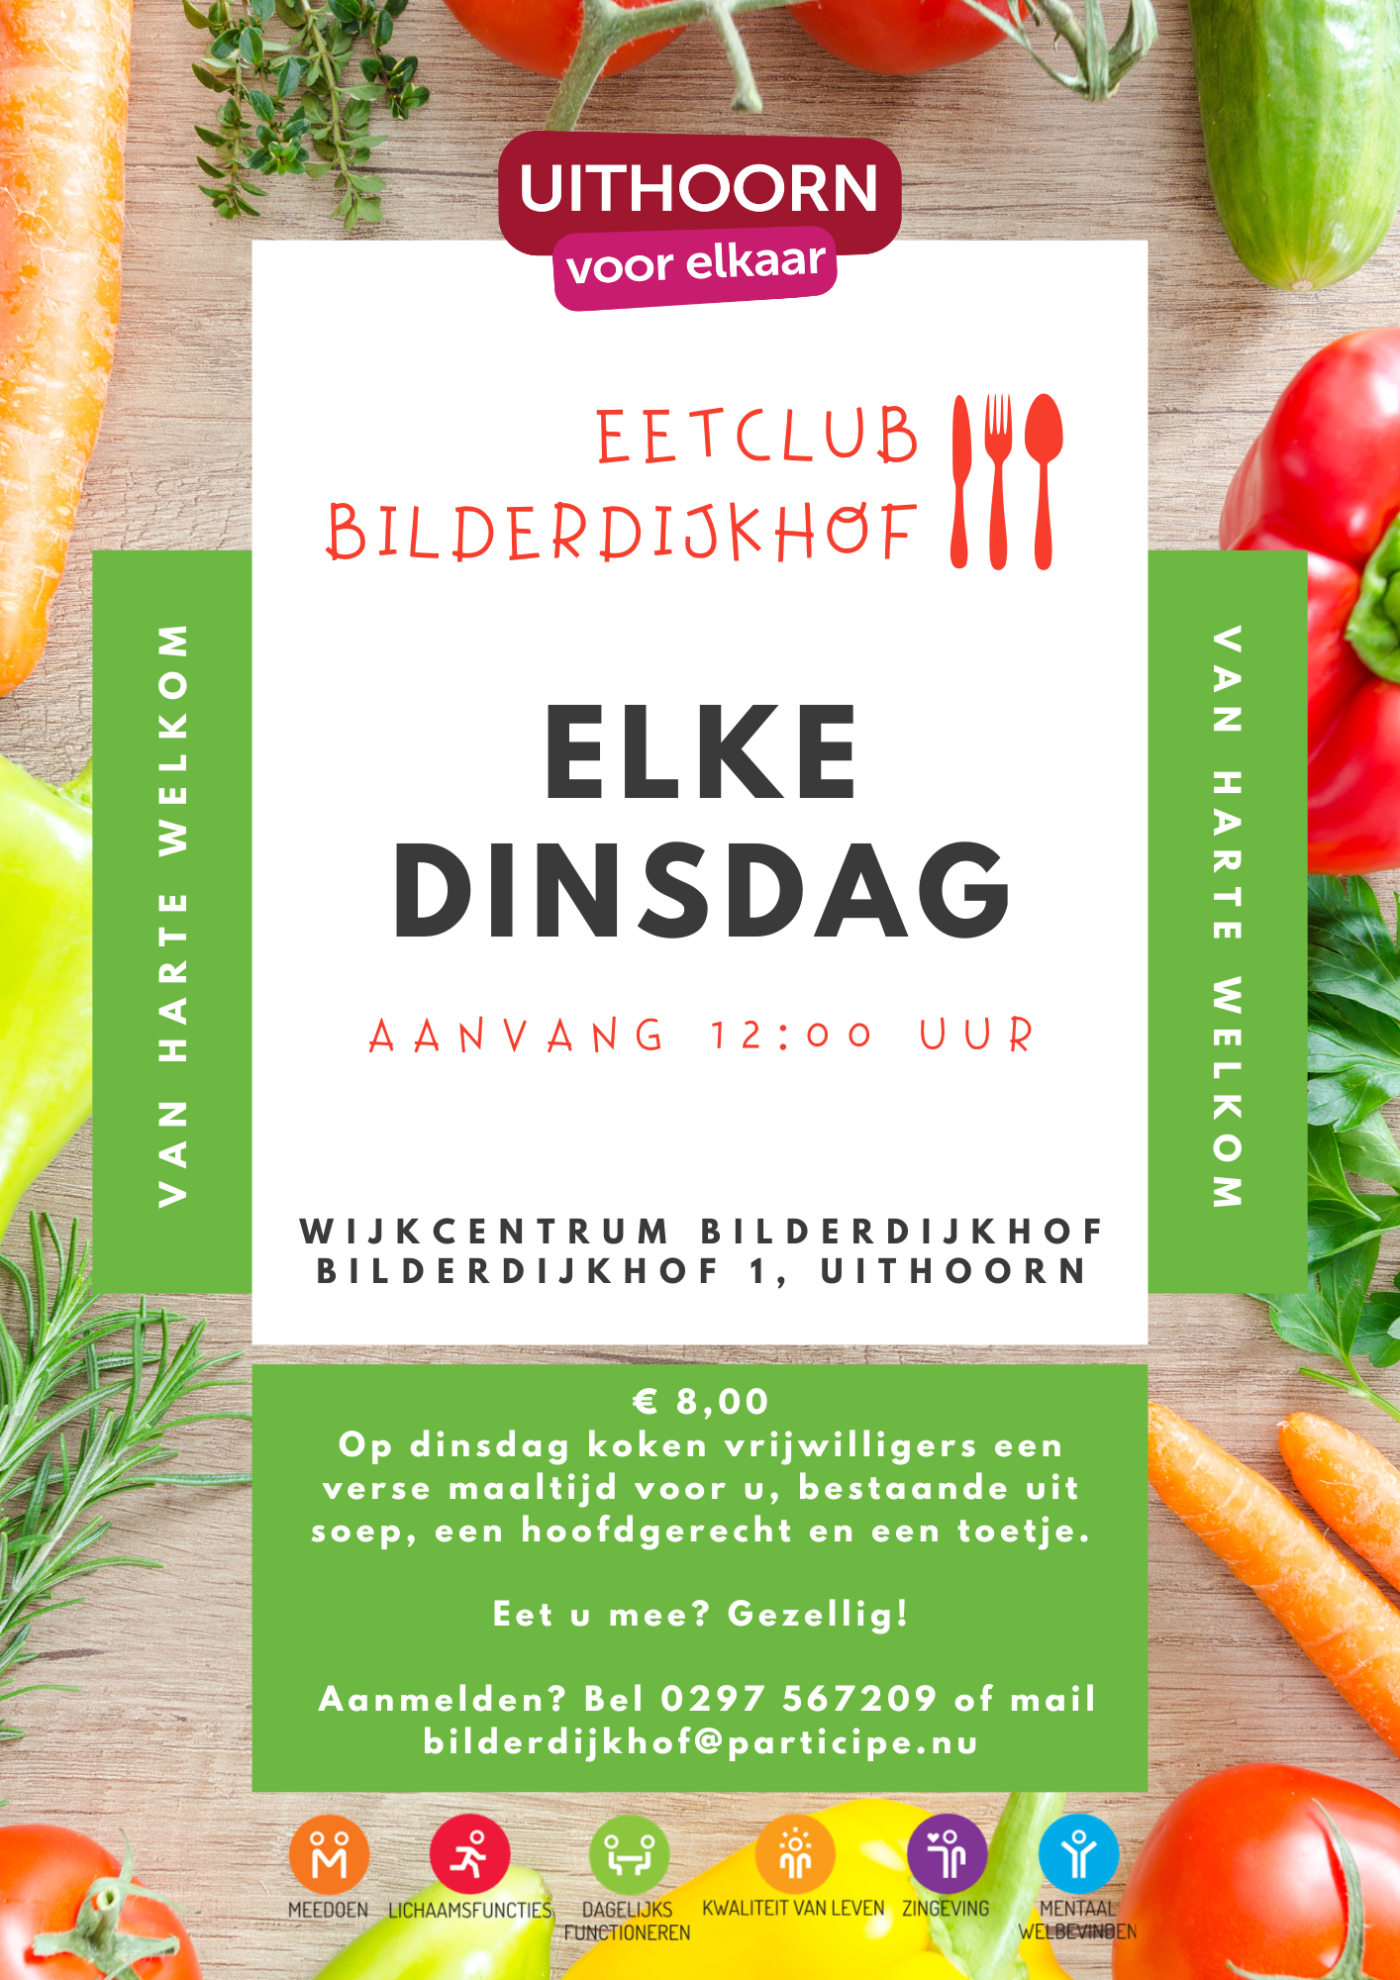 Eetclub Bilderdijkhof Uithoorn